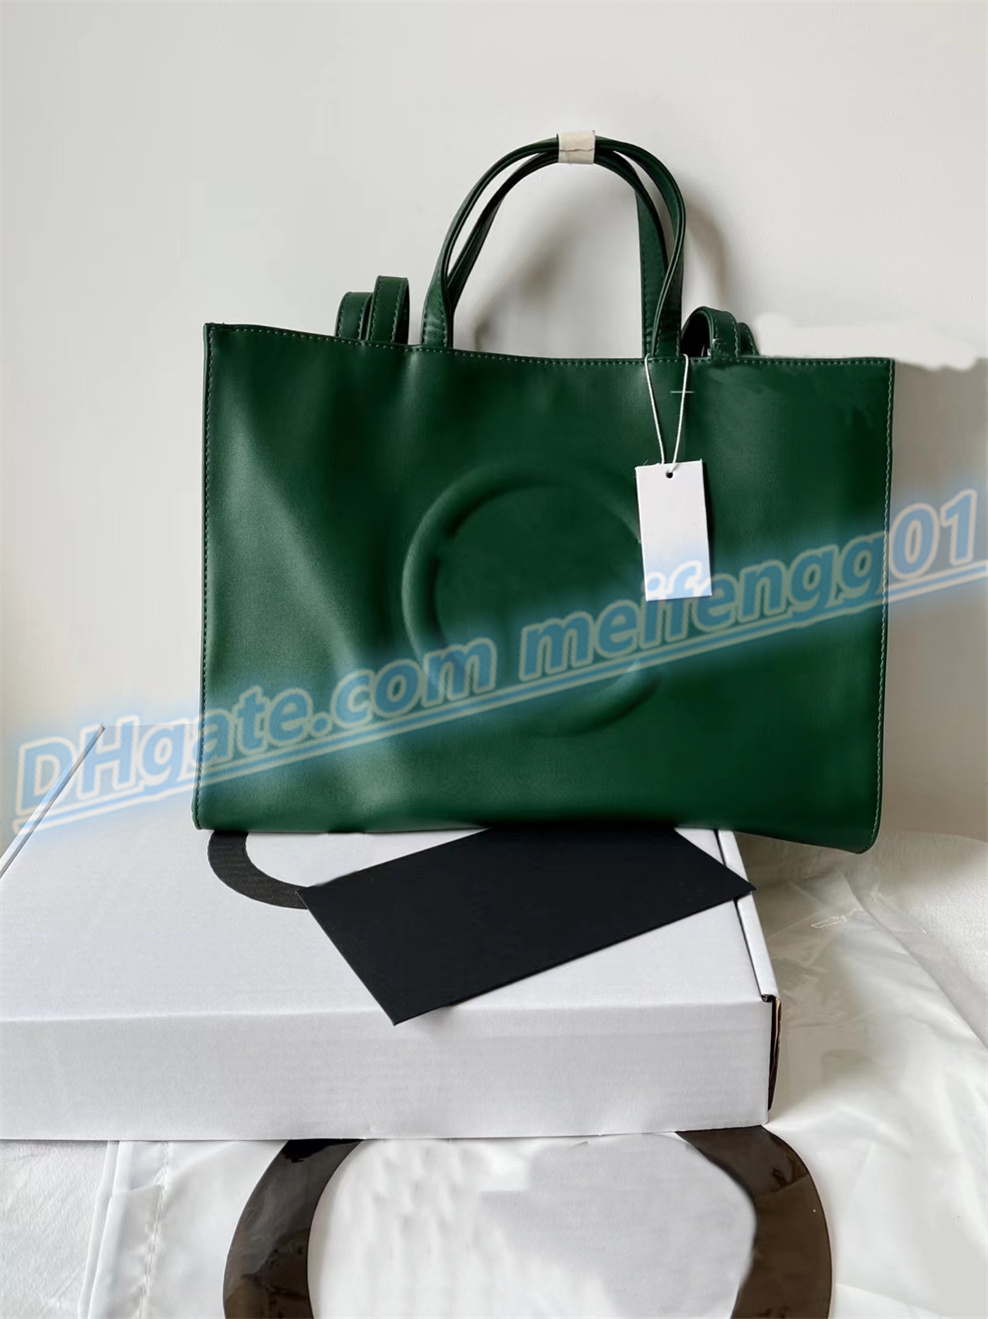 Mody projektant designerskich skórzane torby na zakupy skórzane sznurki mini męskie torebki torbo